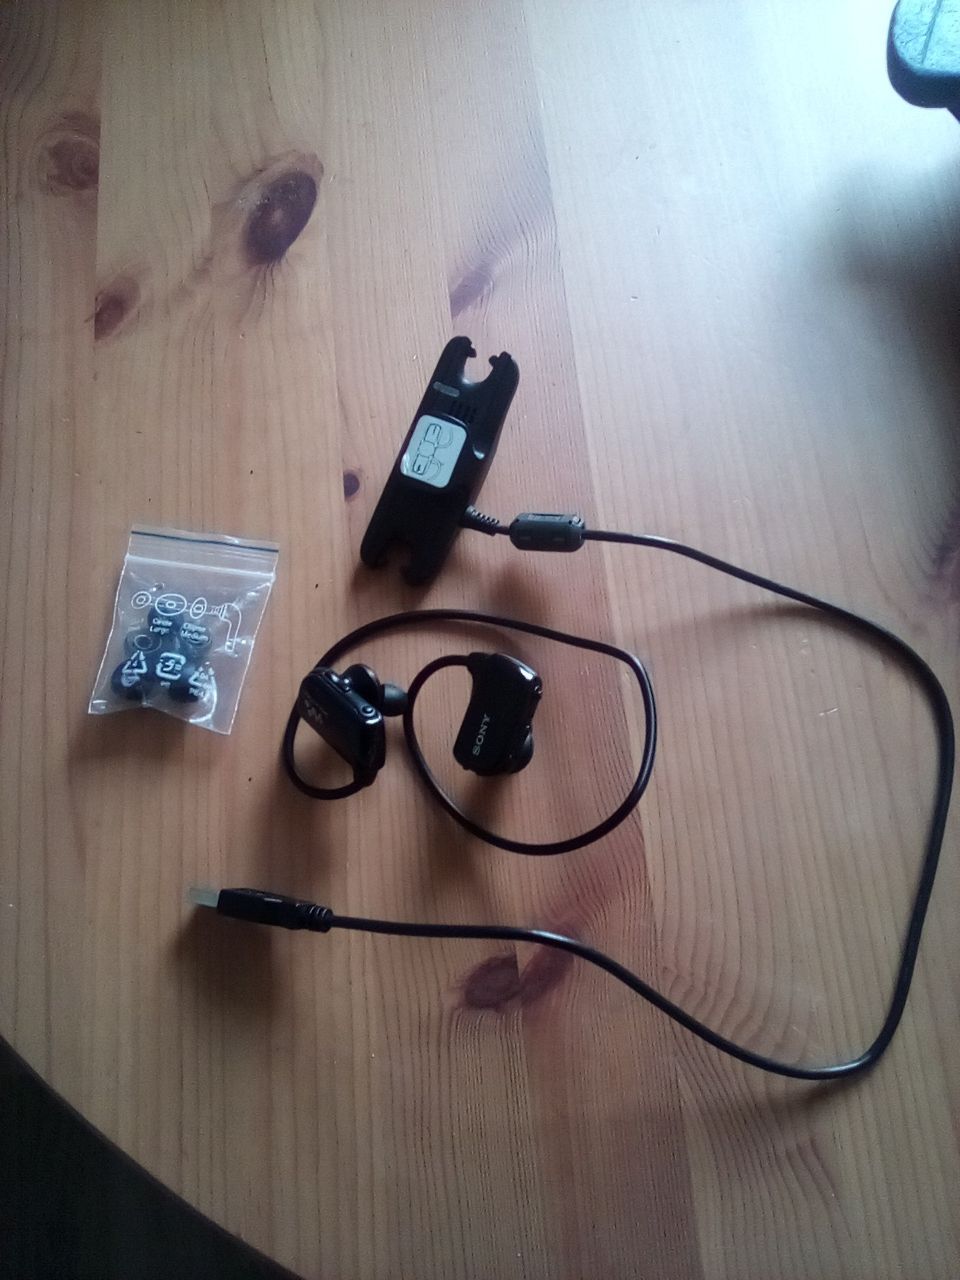 Sony Walkman NWZ-W273S vedenkestävä MP3 soitin / kuulokkeet.